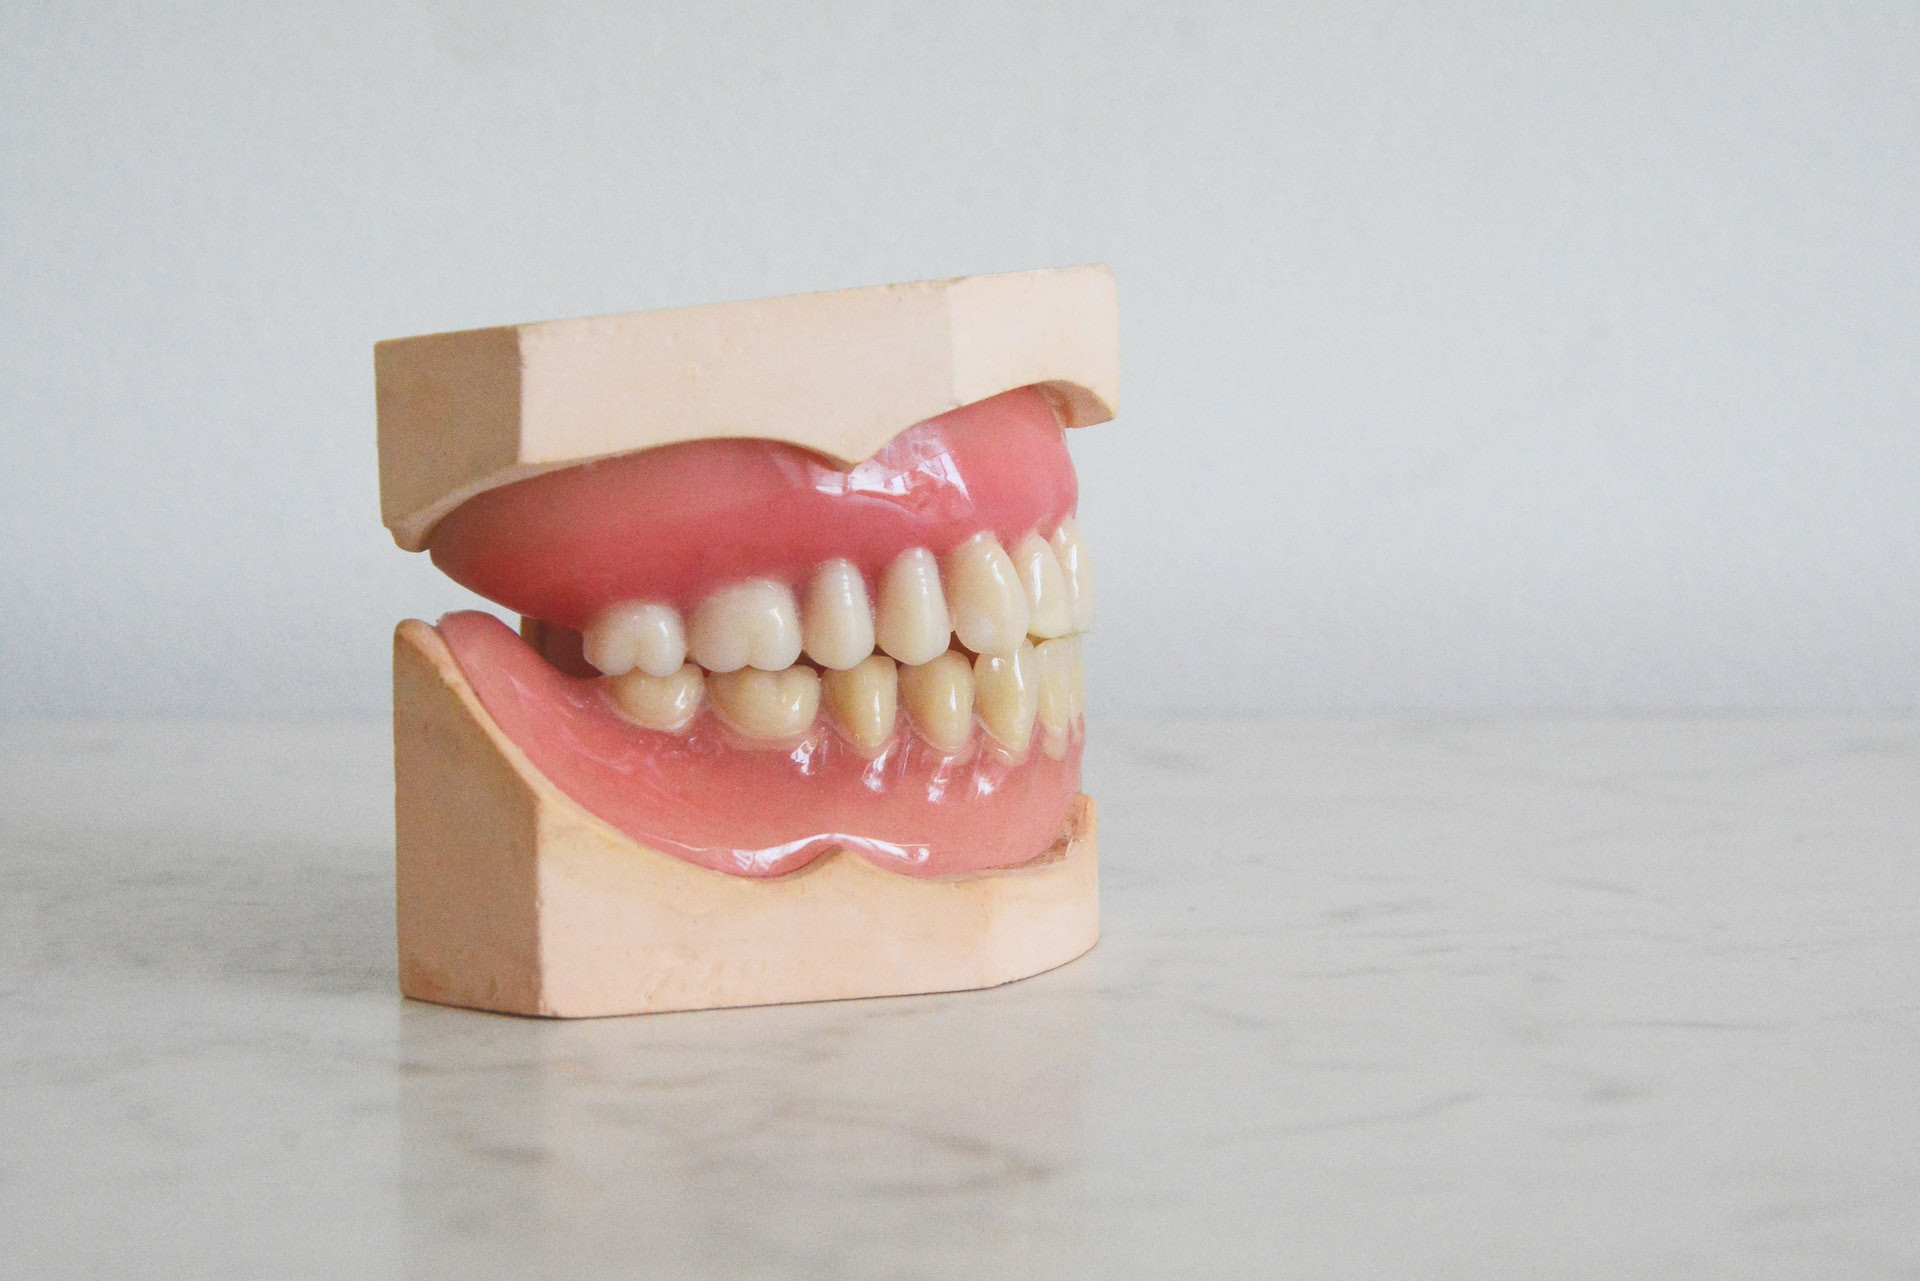 Bruksizem (škrtanje) se prepozna po obrabljenih, skrajšanih zobeh